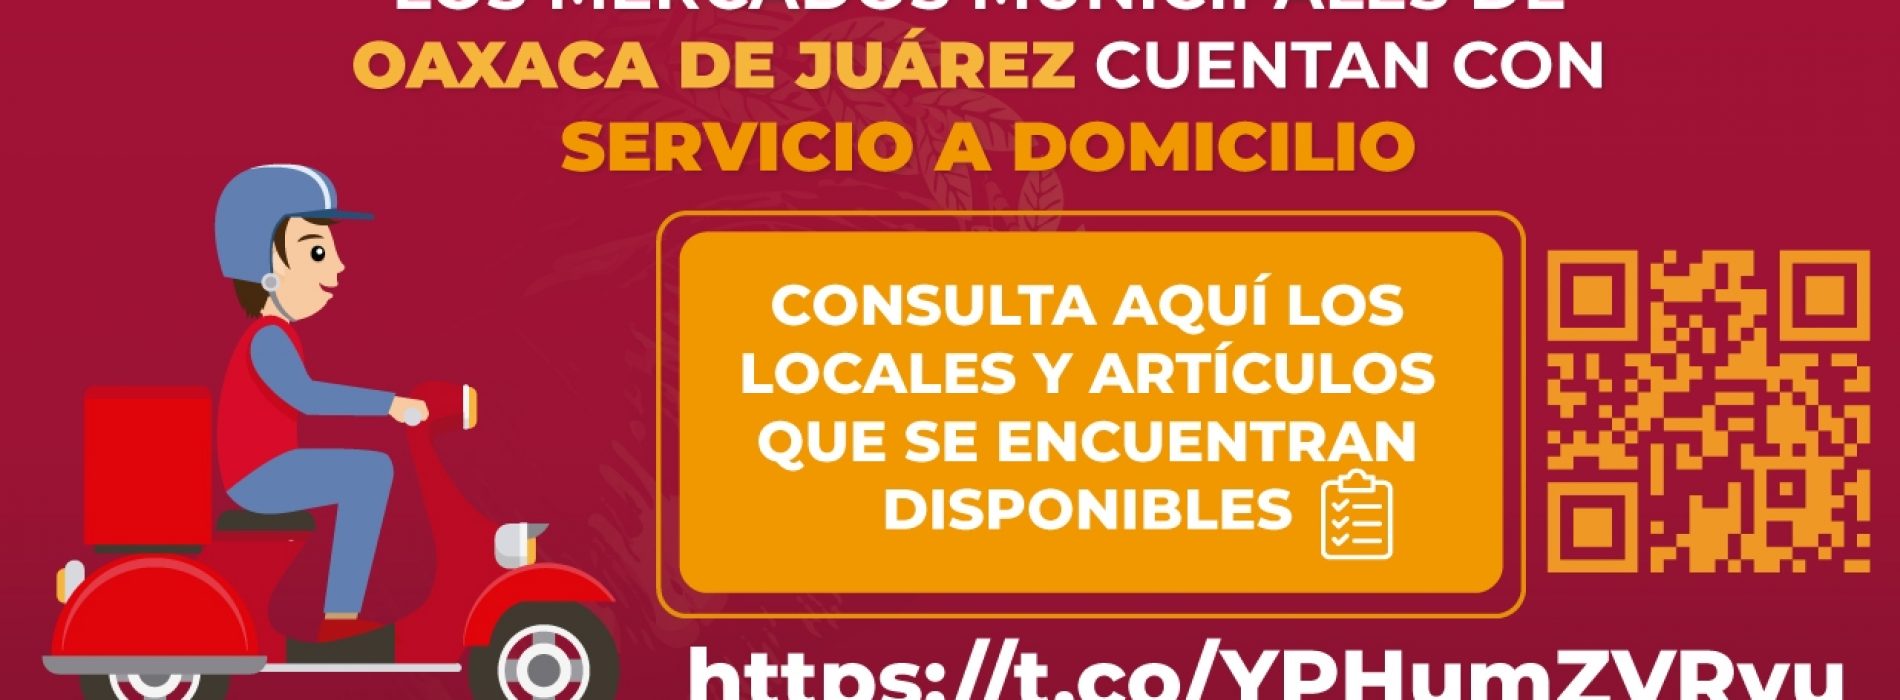 Mercados de Oaxaca de Juárez ofrecen servicio a domicilio durante la contingencia